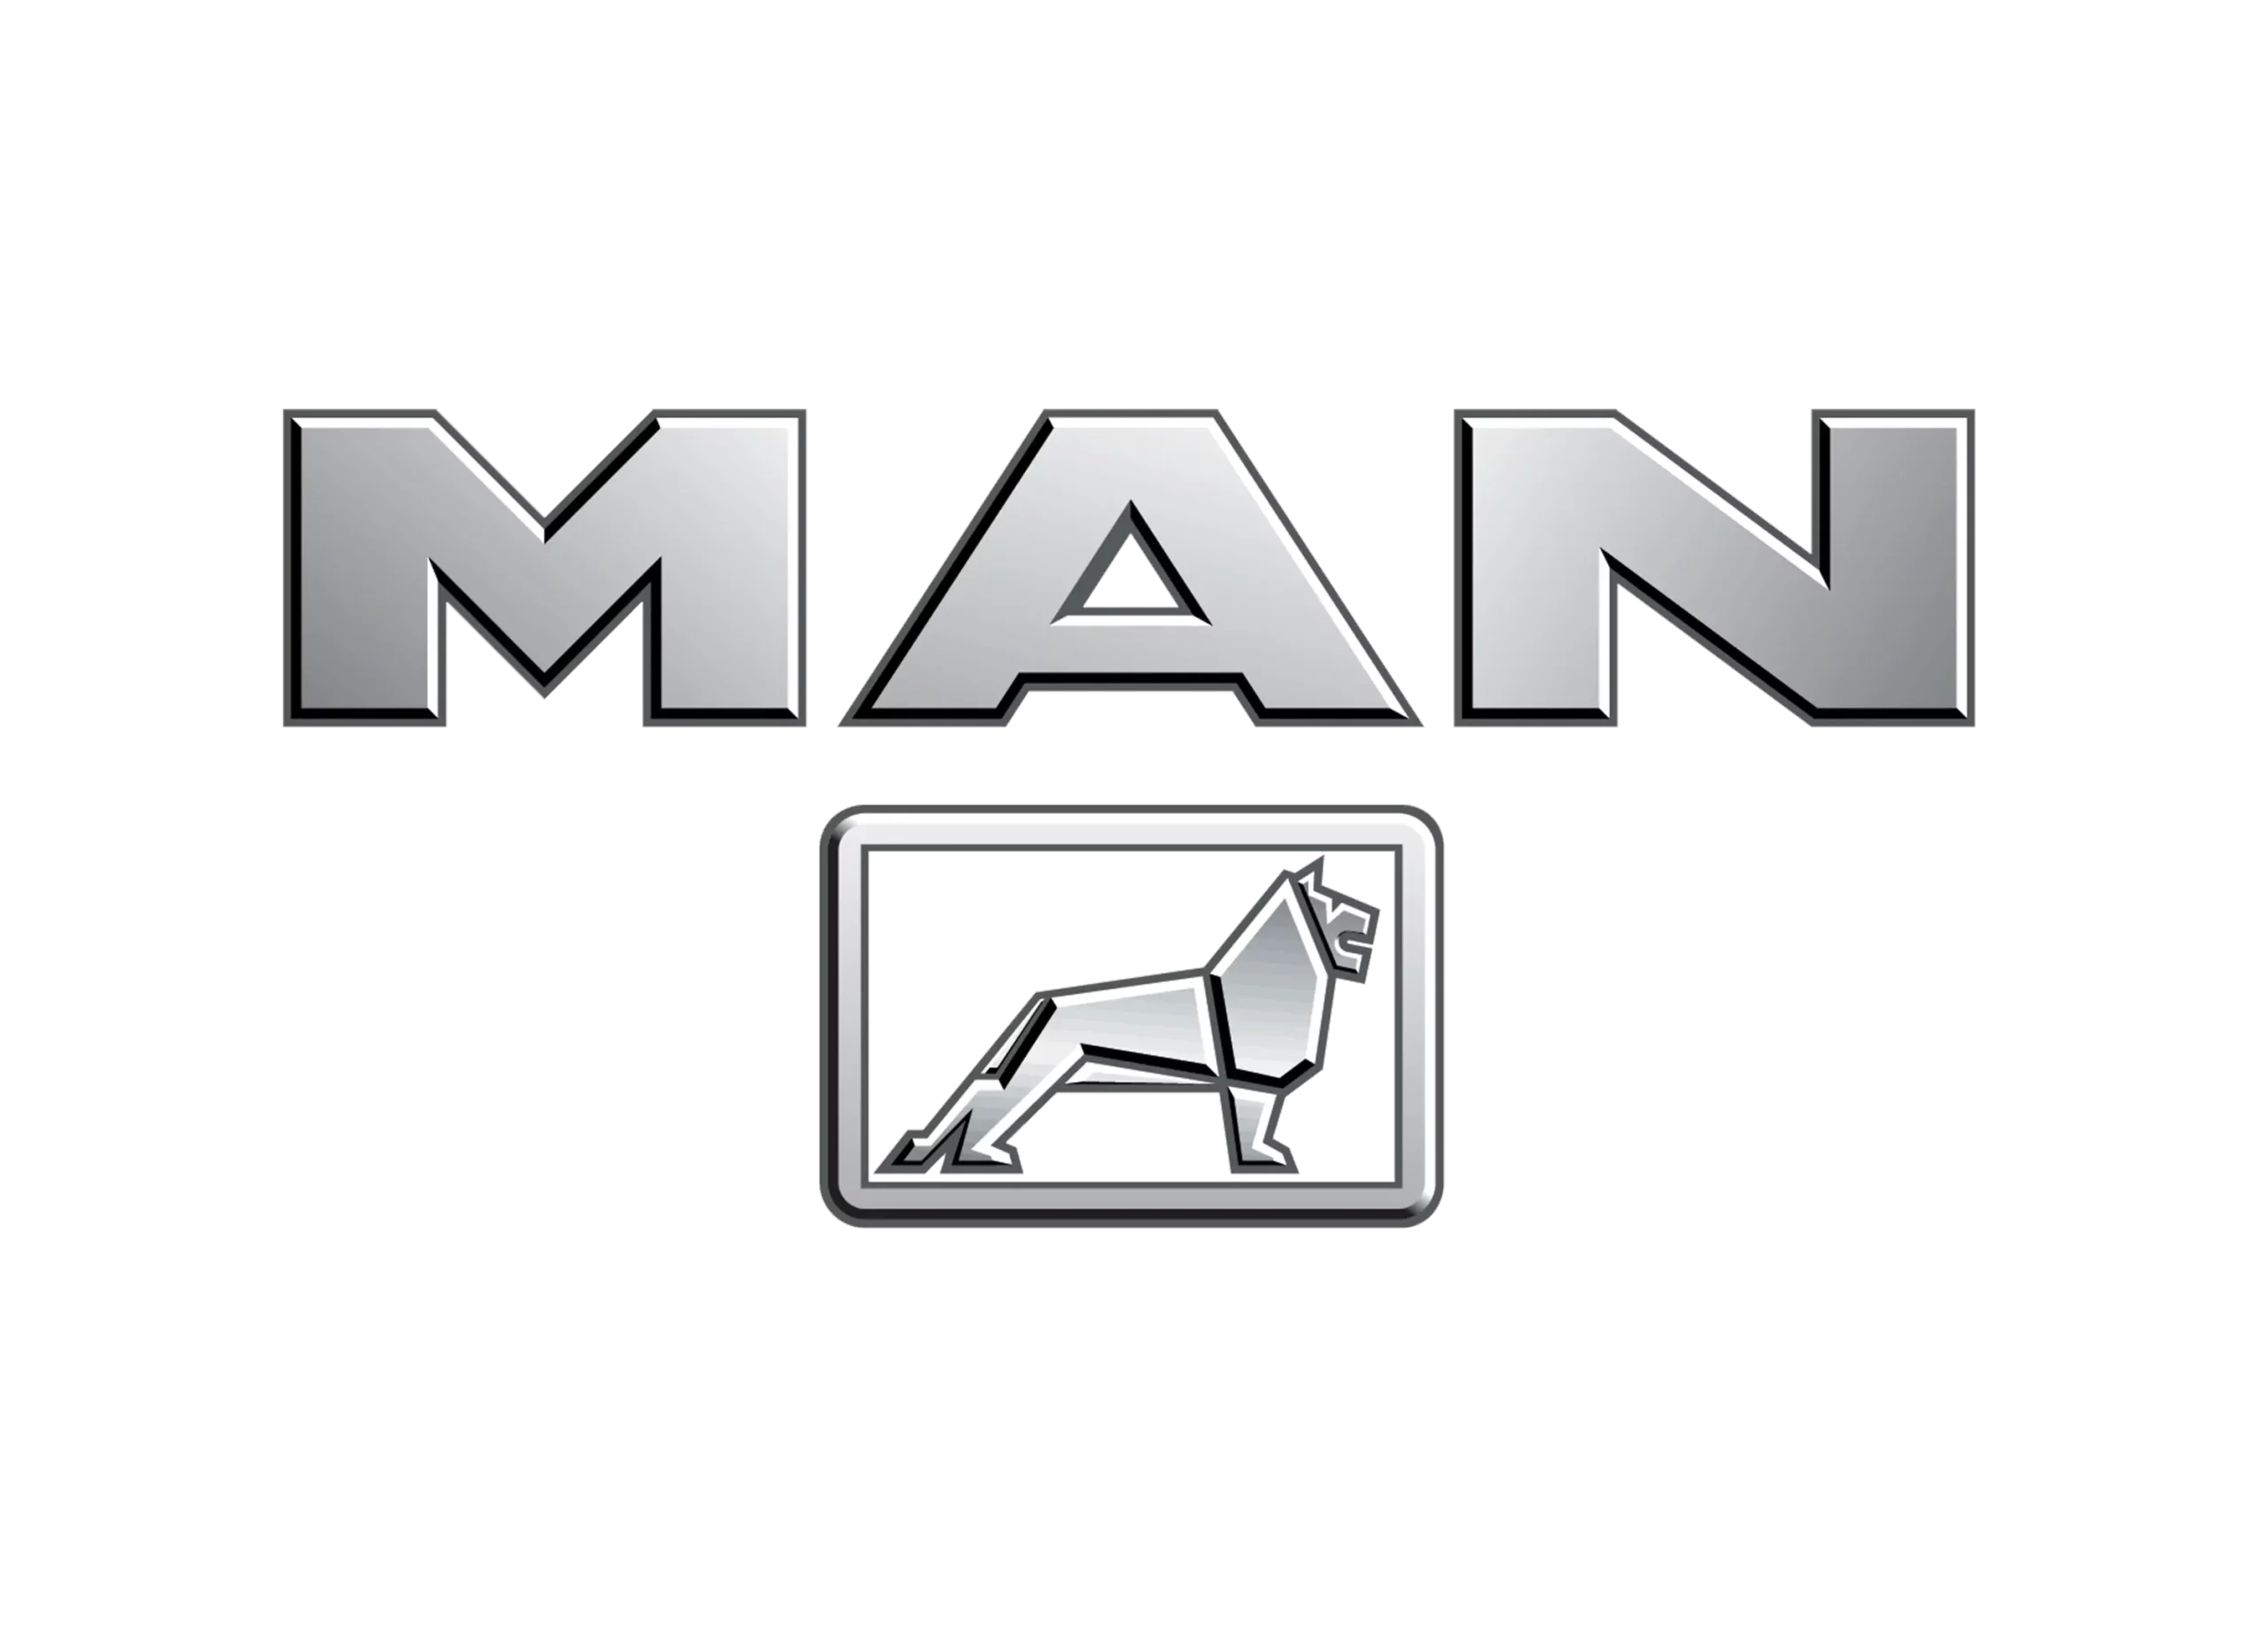 MAN emblem